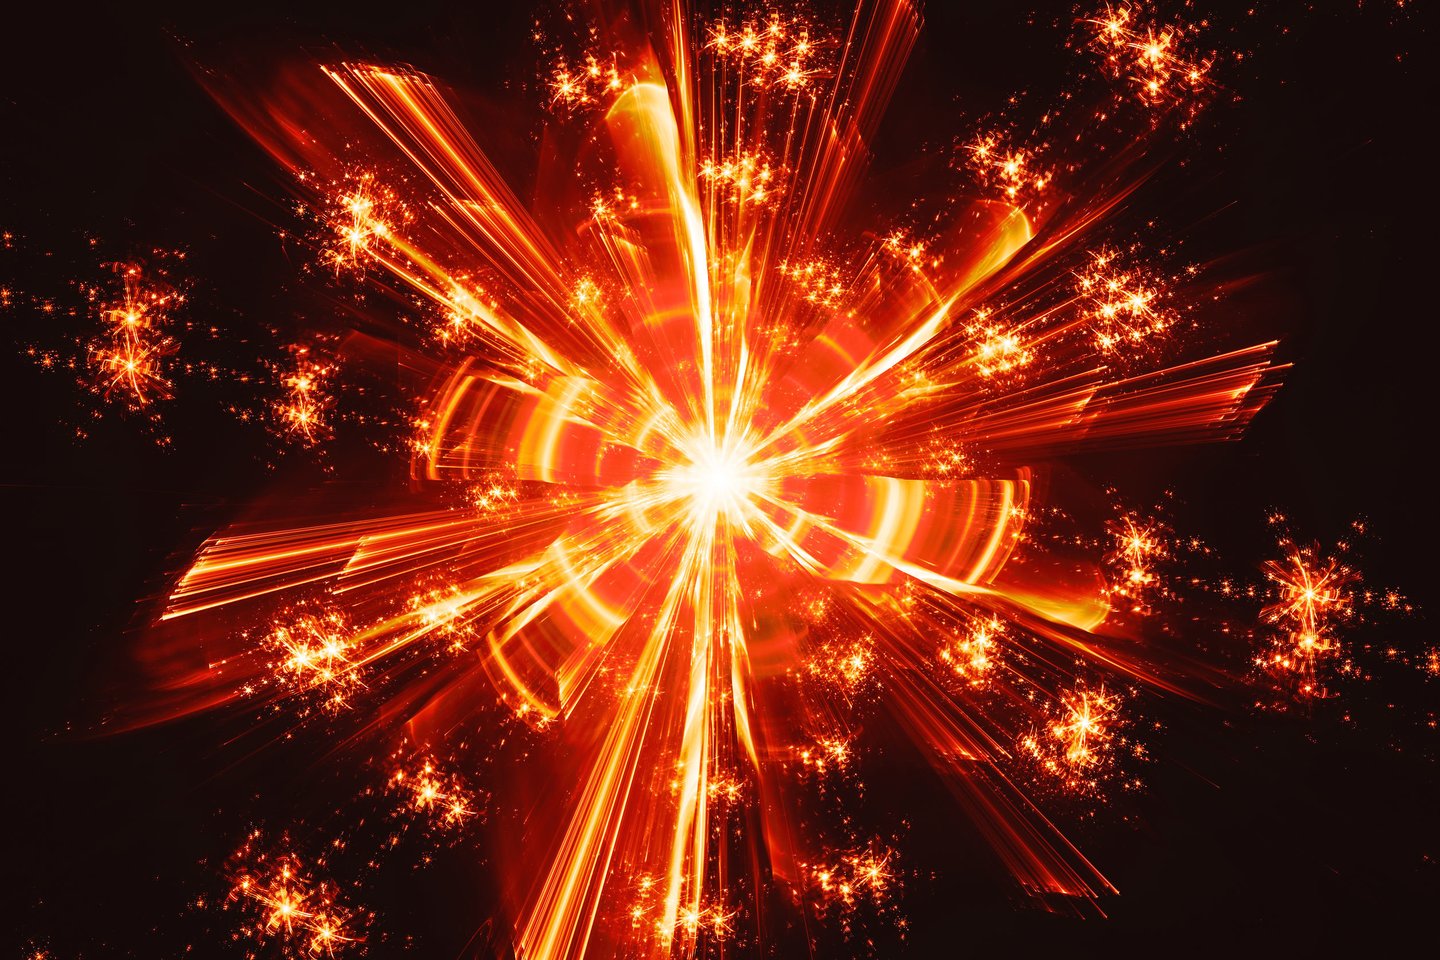  Vengrijos mokslų akademijos mokslininkai sako, kad rado naują dalelę, kurią jie vadina X17. Dalelė atrasta tyrinėjant, kaip sužadintas ir irdamas helio atomas skleidžia šviesą (asociatyvinė iliustr.)<br> 1233RF iliustr.